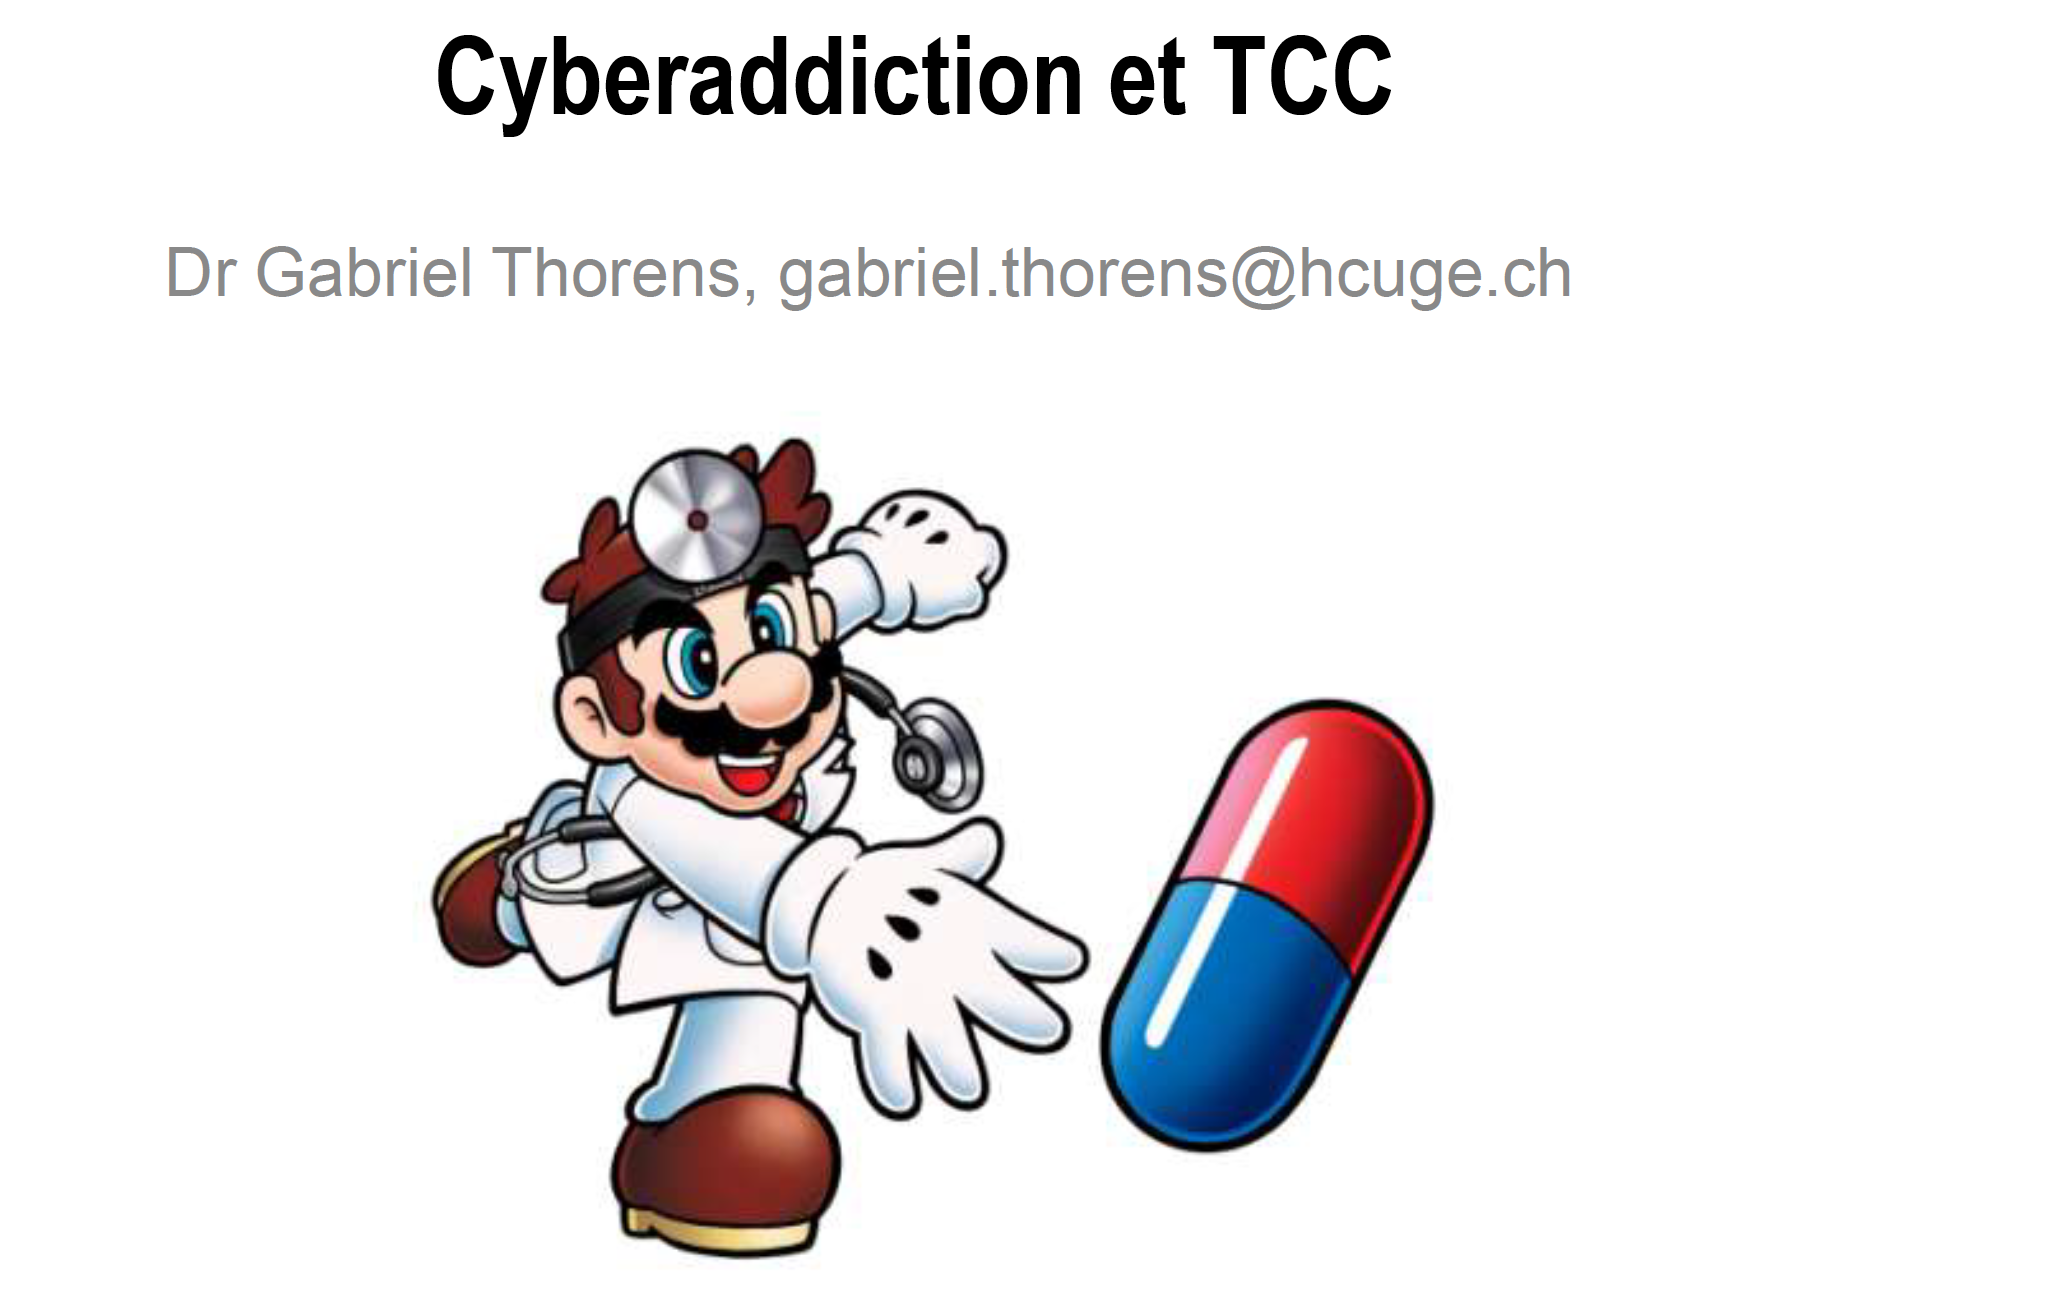 TCC des cyberaddictions